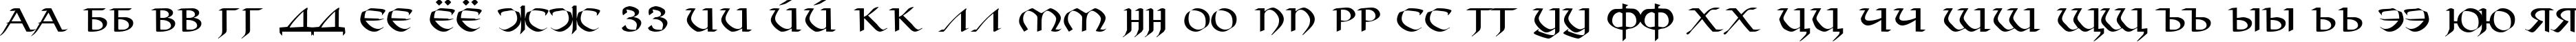 Пример написания русского алфавита шрифтом Viking